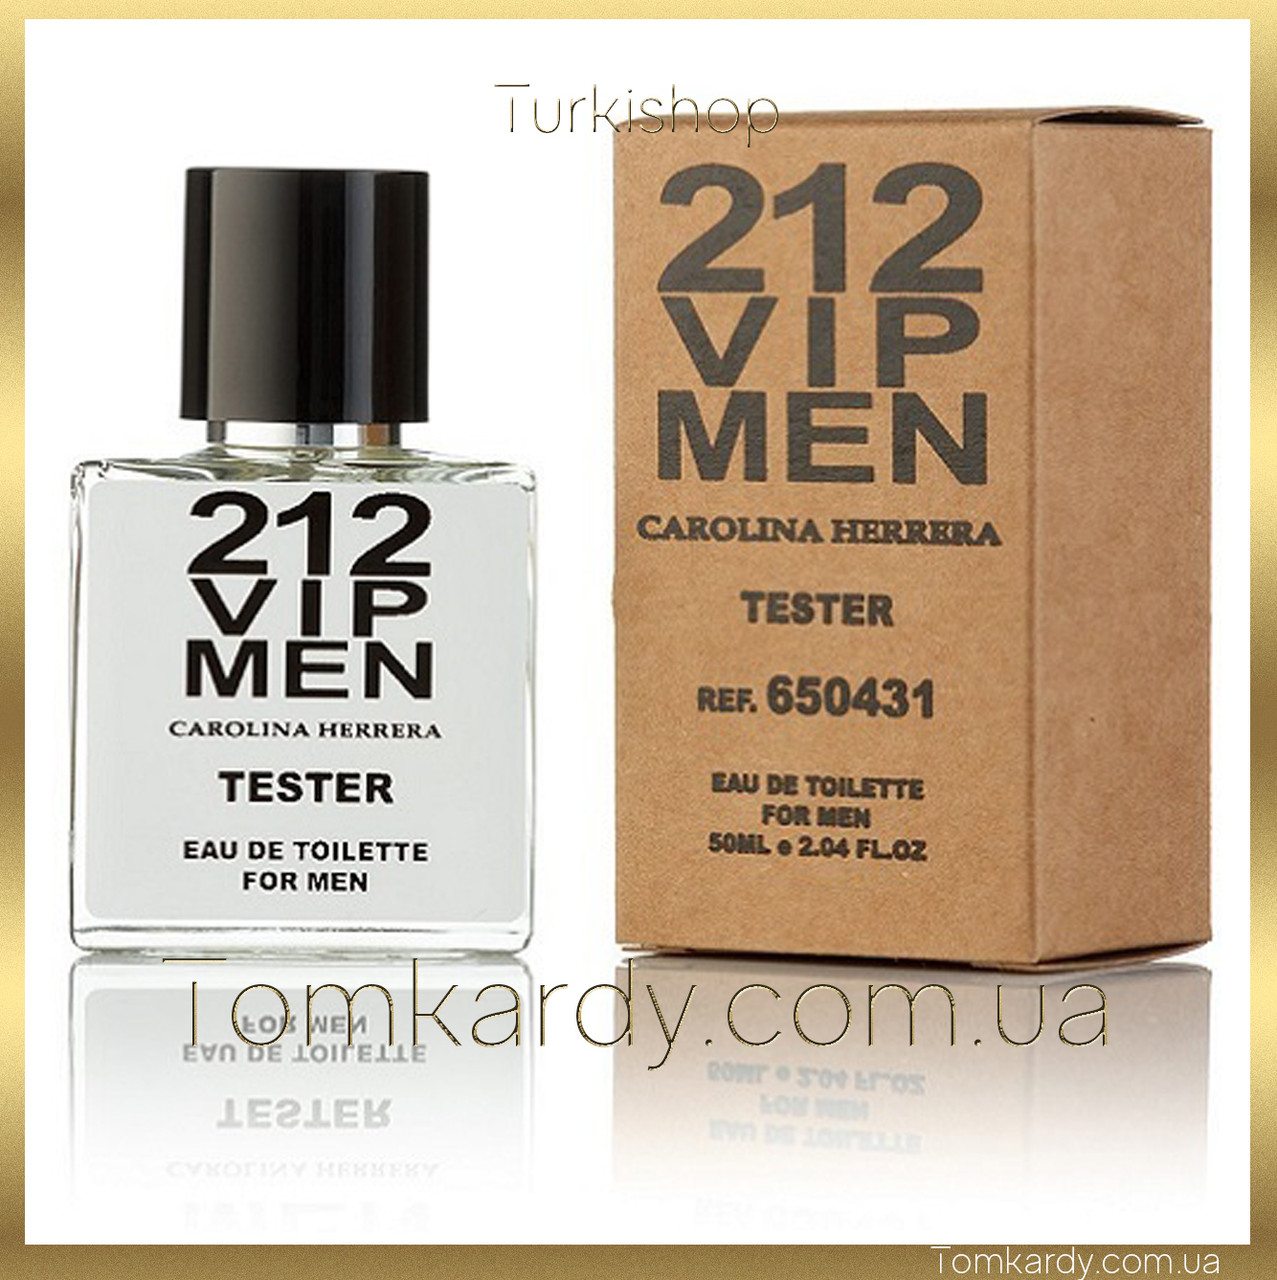 Чоловічі парфуми Carolina Herrera 212 VIP Men [Tester Концентрат] 50 ml. Кароліна Еррера 212 Віп Мен (Тестер)